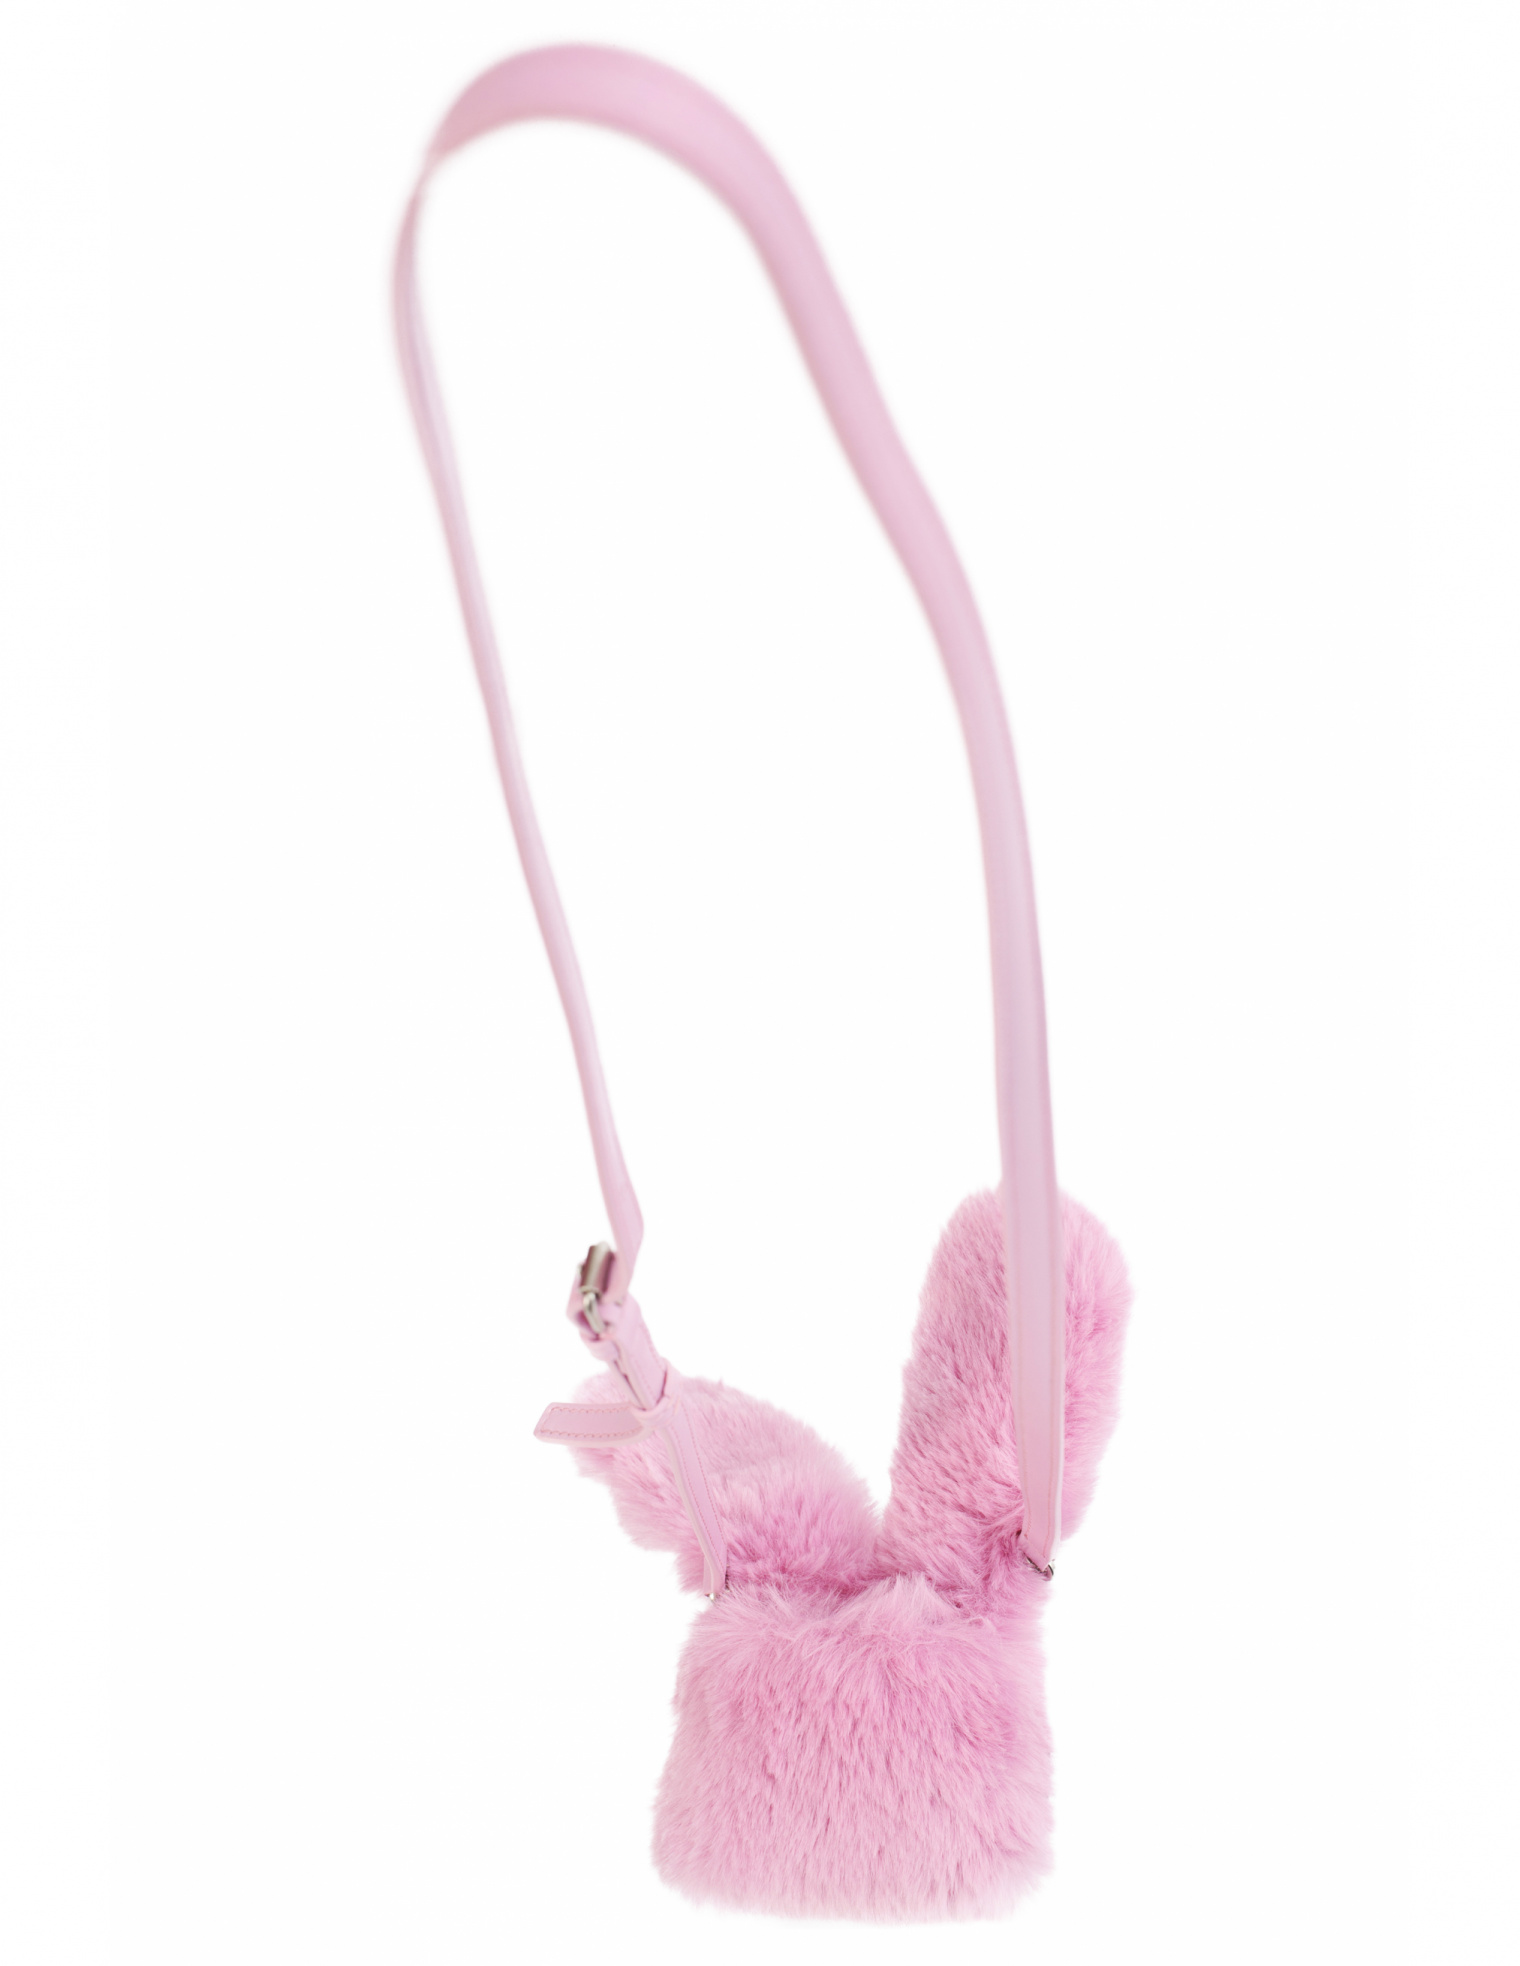 Balenciaga Airpods pink bunny case